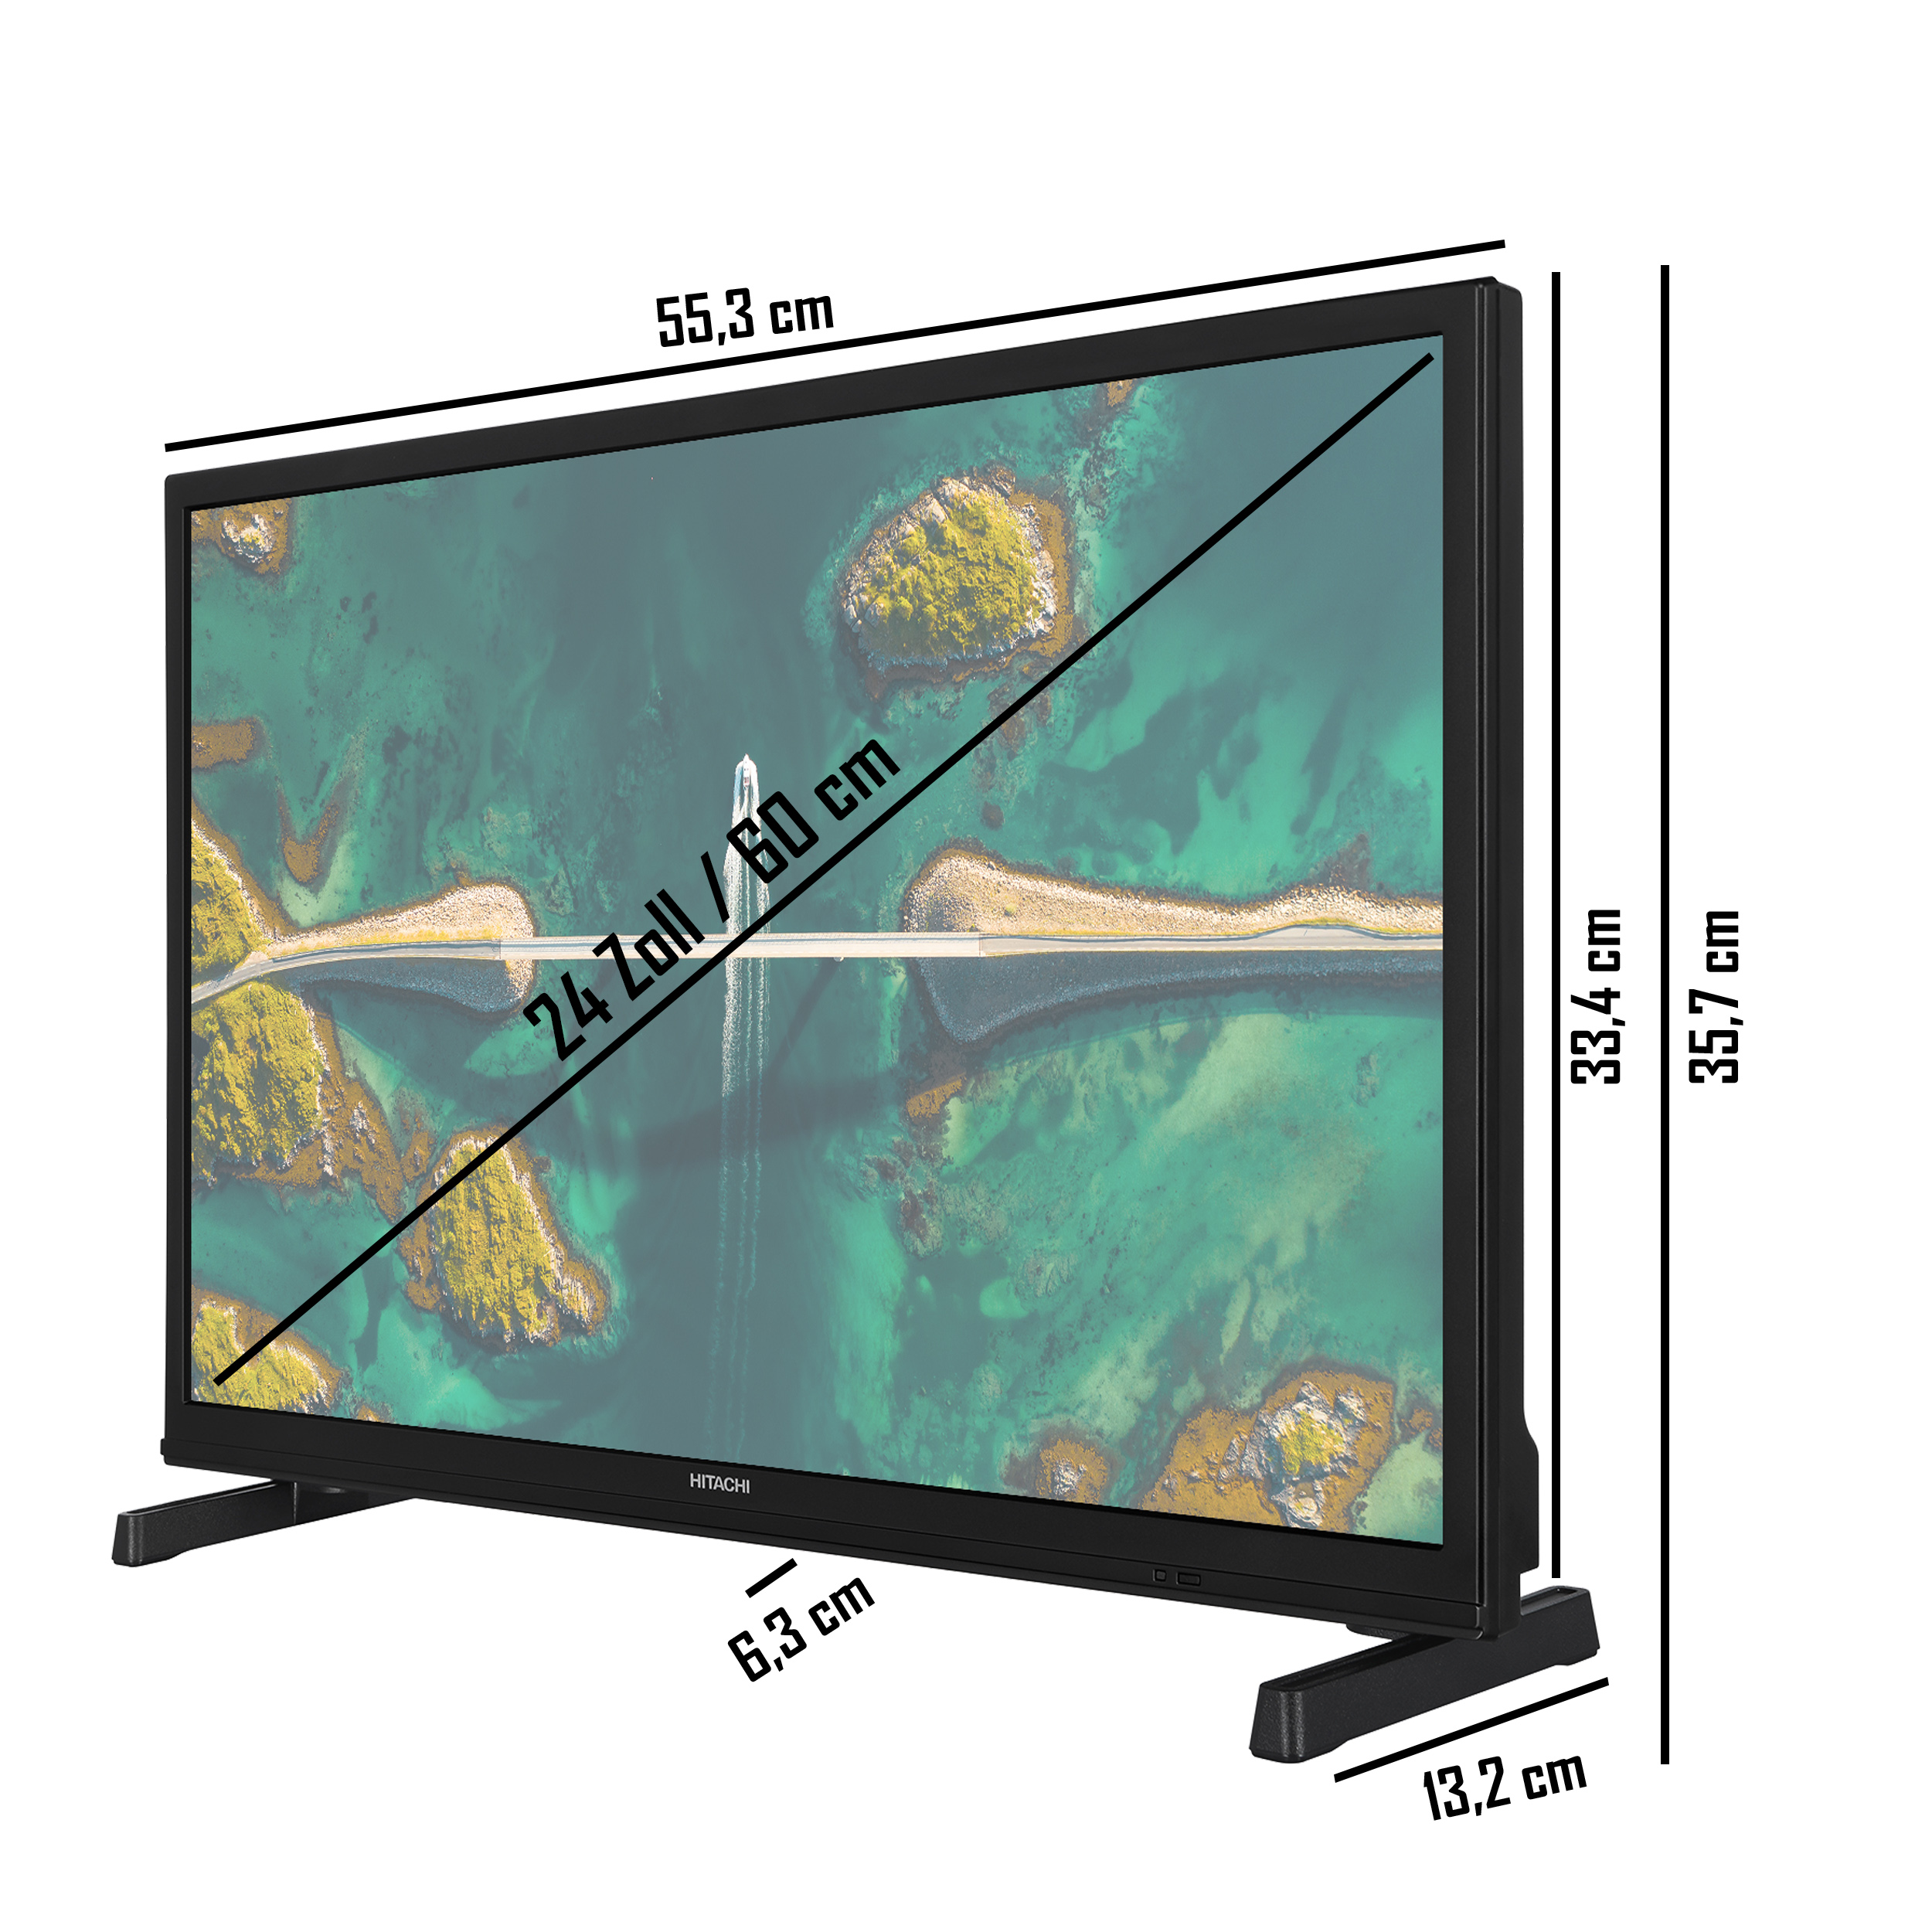 HITACHI / Zoll SMART 60 LED 24 TV TV) HD-ready, cm, (Flat, H24E2305V